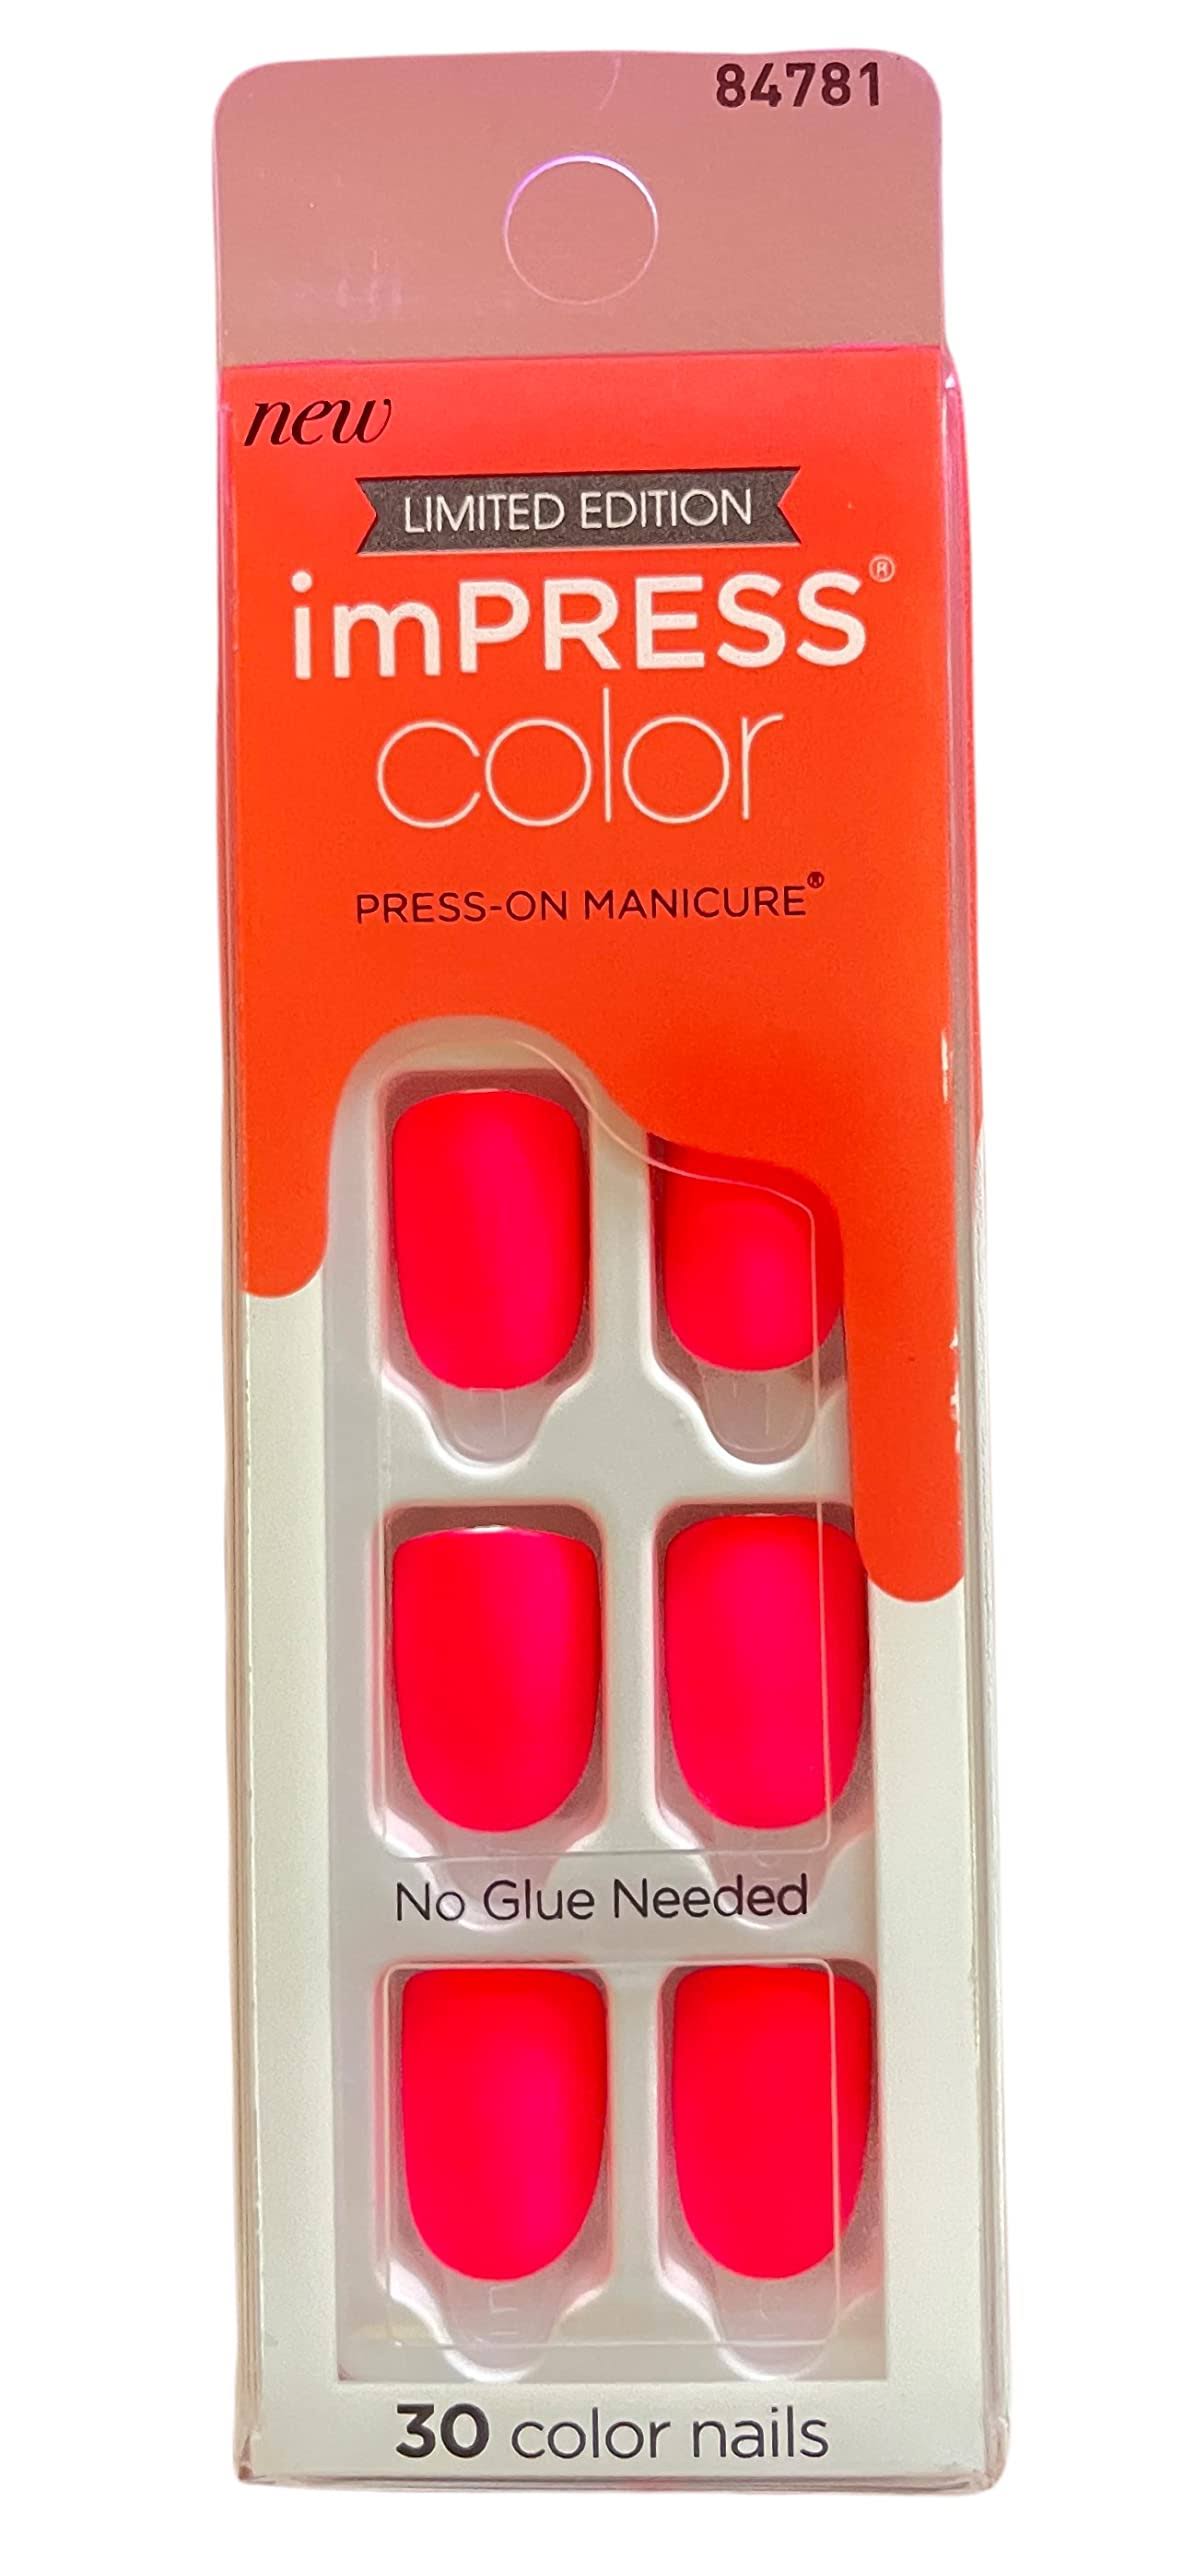 Kiss Impress Press-On Manicure Nail Kit in Beautiful